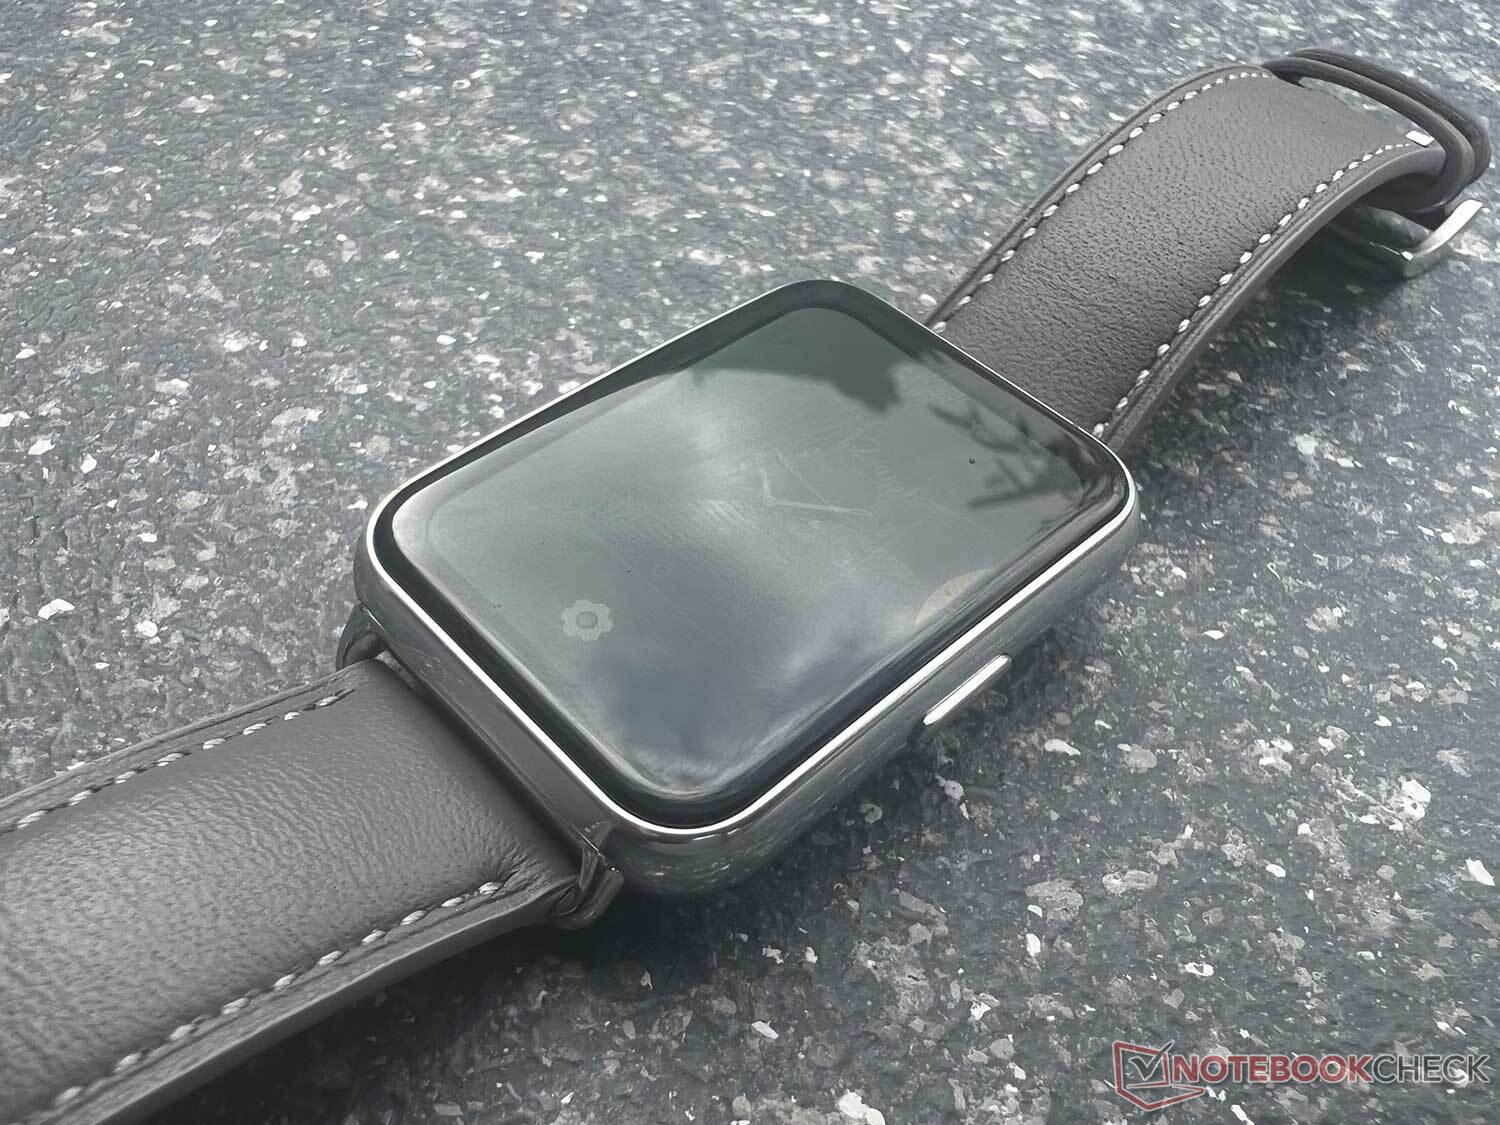 Huawei Watch Fit 2: relógio inteligente que funciona sem celular